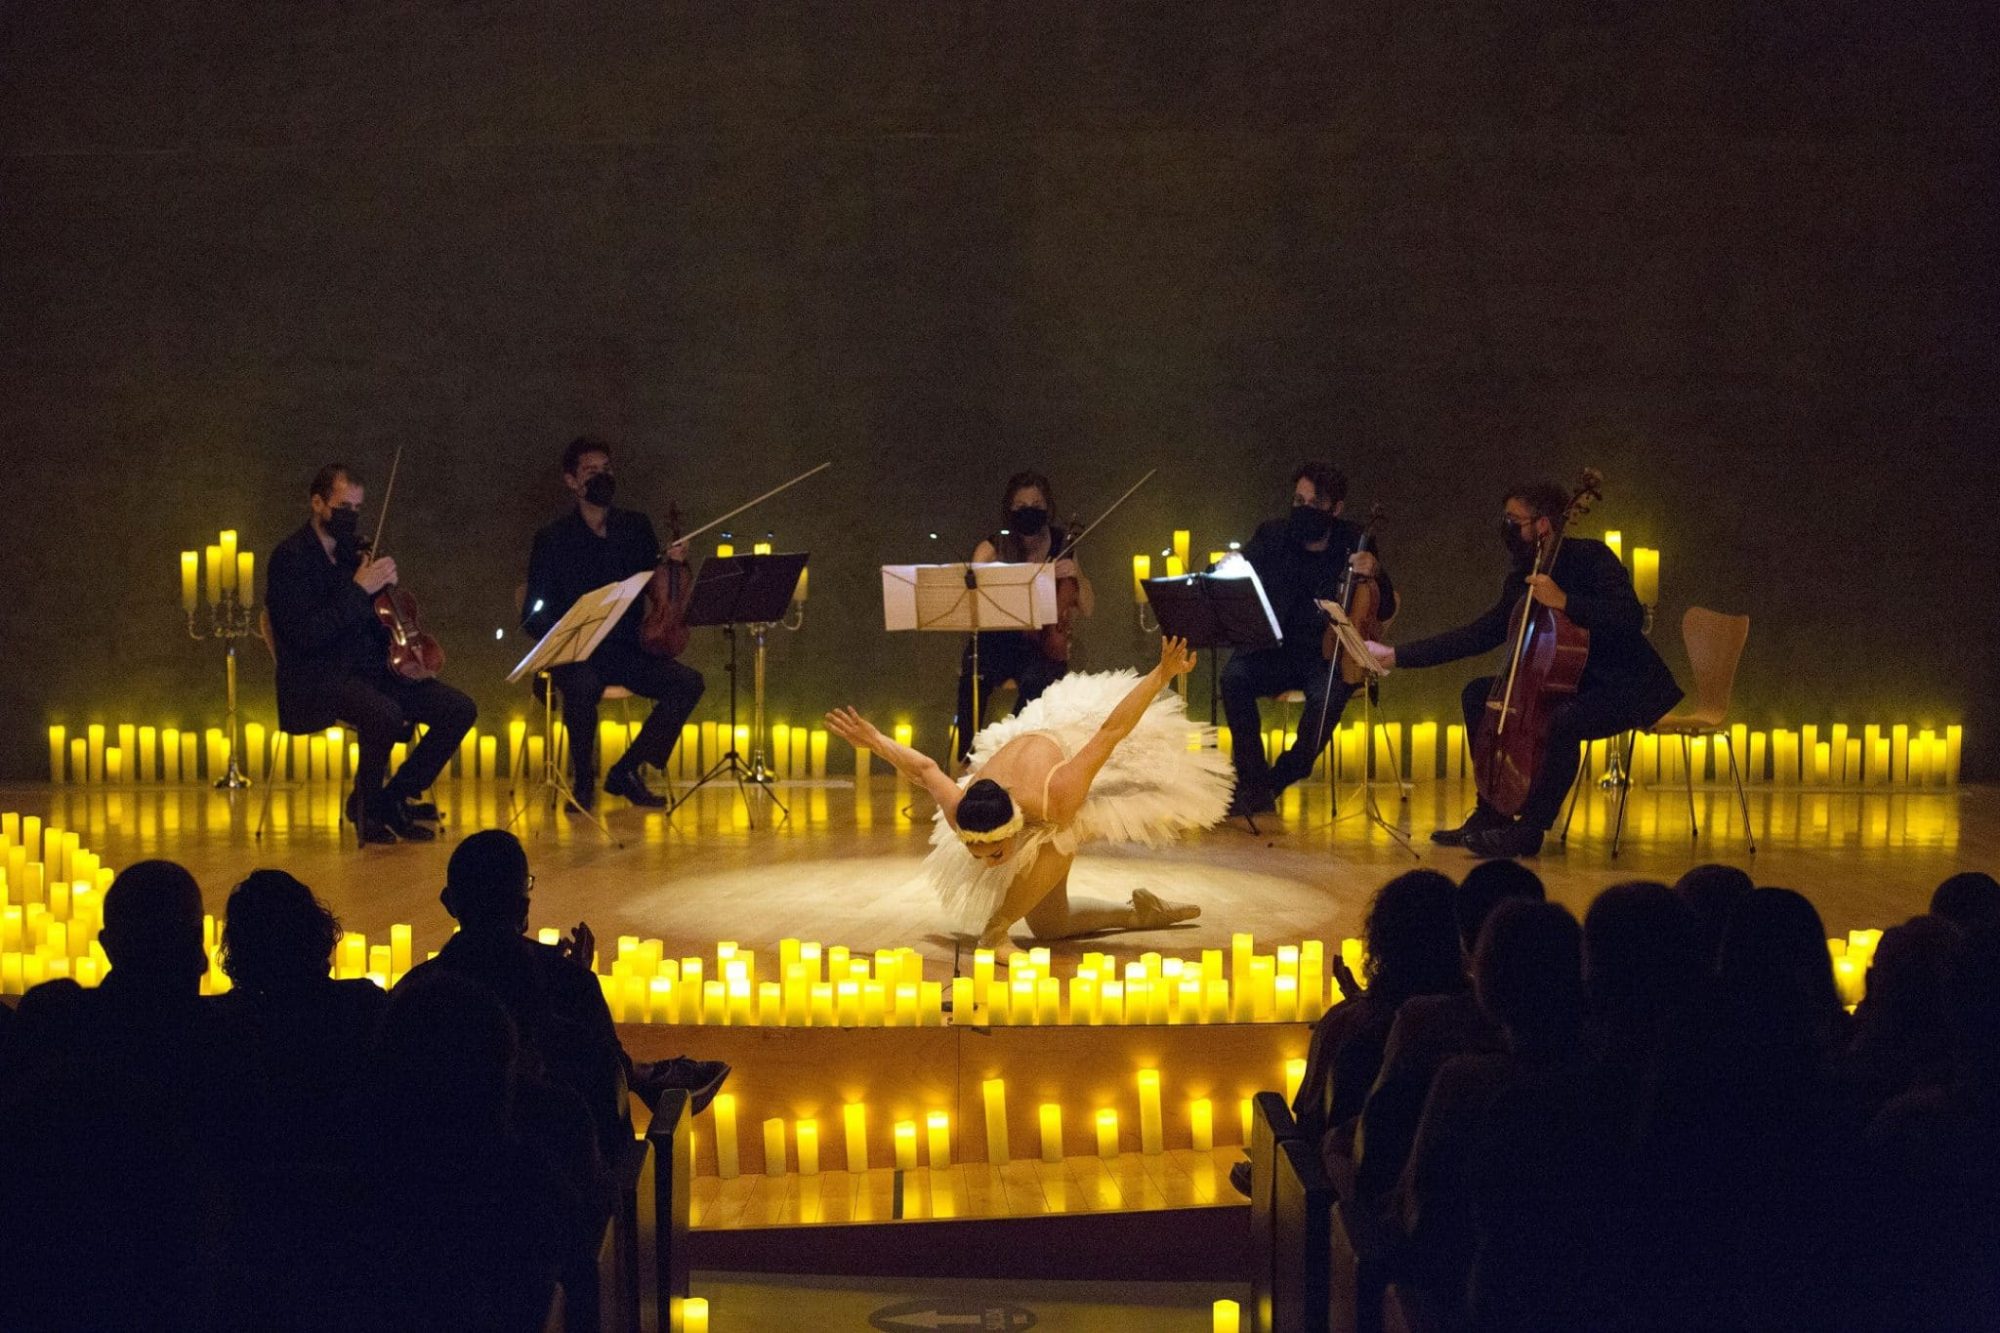 Candleligh traz música ao vivo à luz de velas acompanhada de ballet para o Teatro RioMar Recife